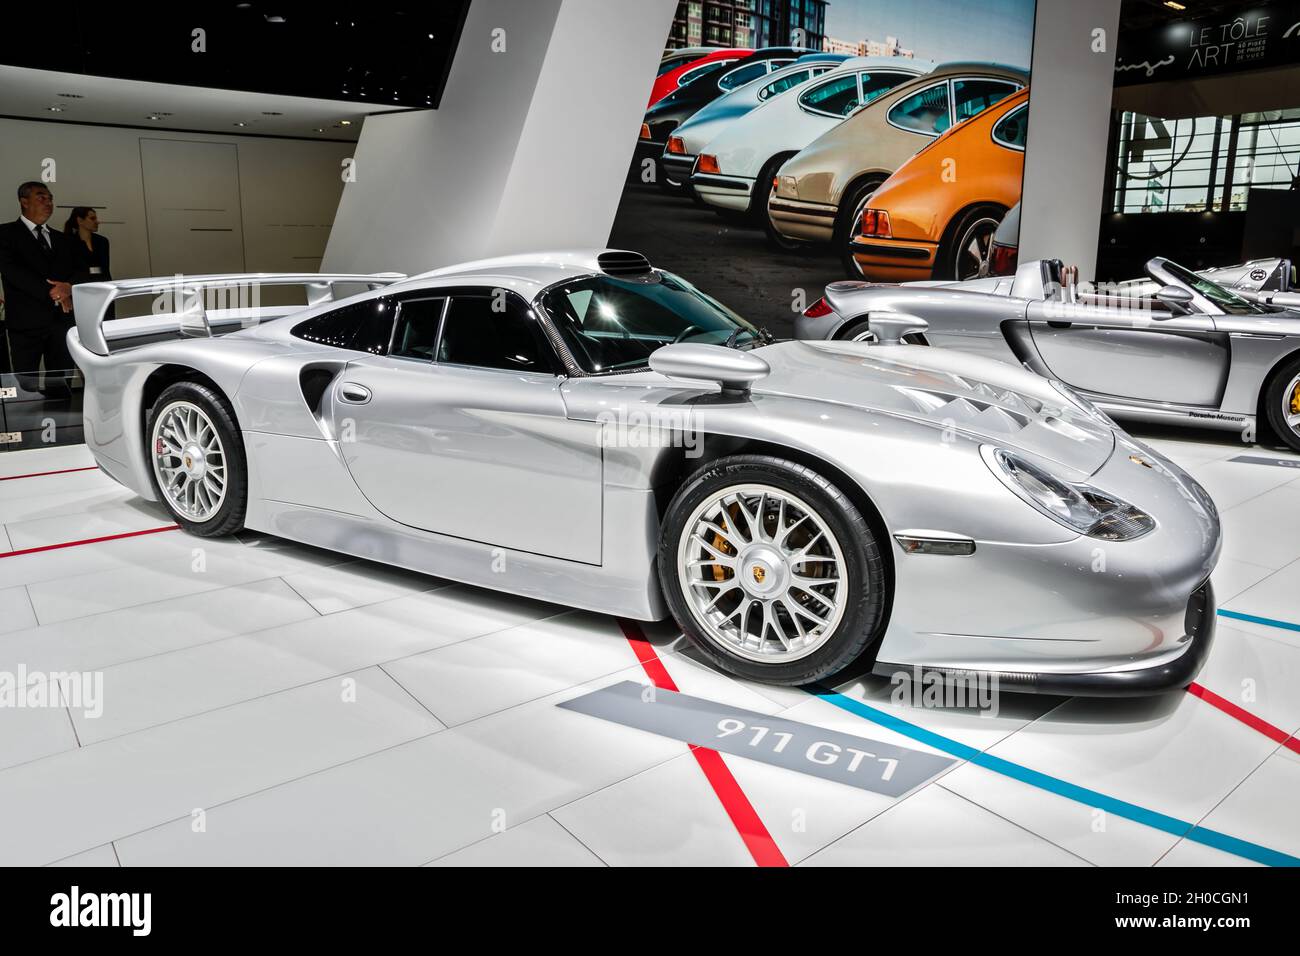 Porsche 911 gt1 immagini e fotografie stock ad alta risoluzione - Alamy